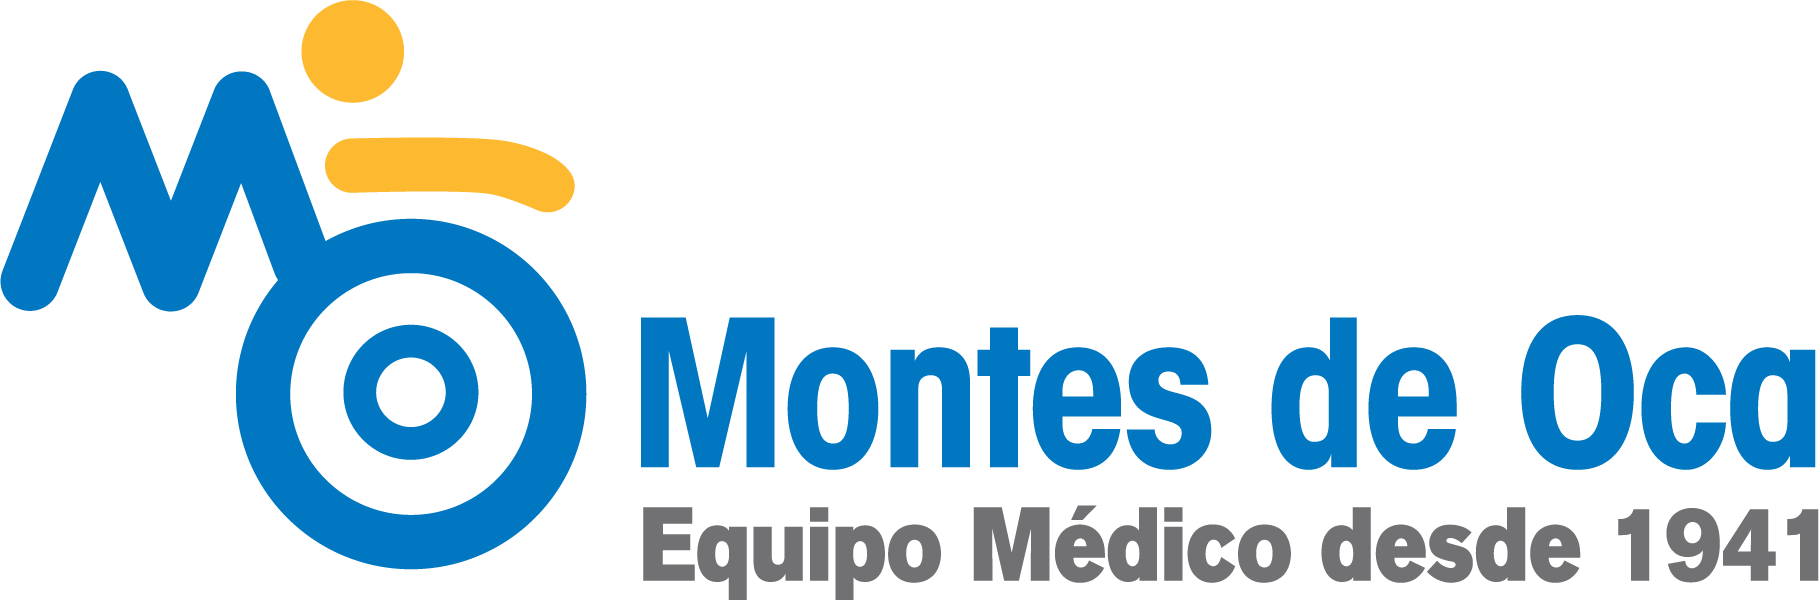 Equipo Medico Montes de Oca